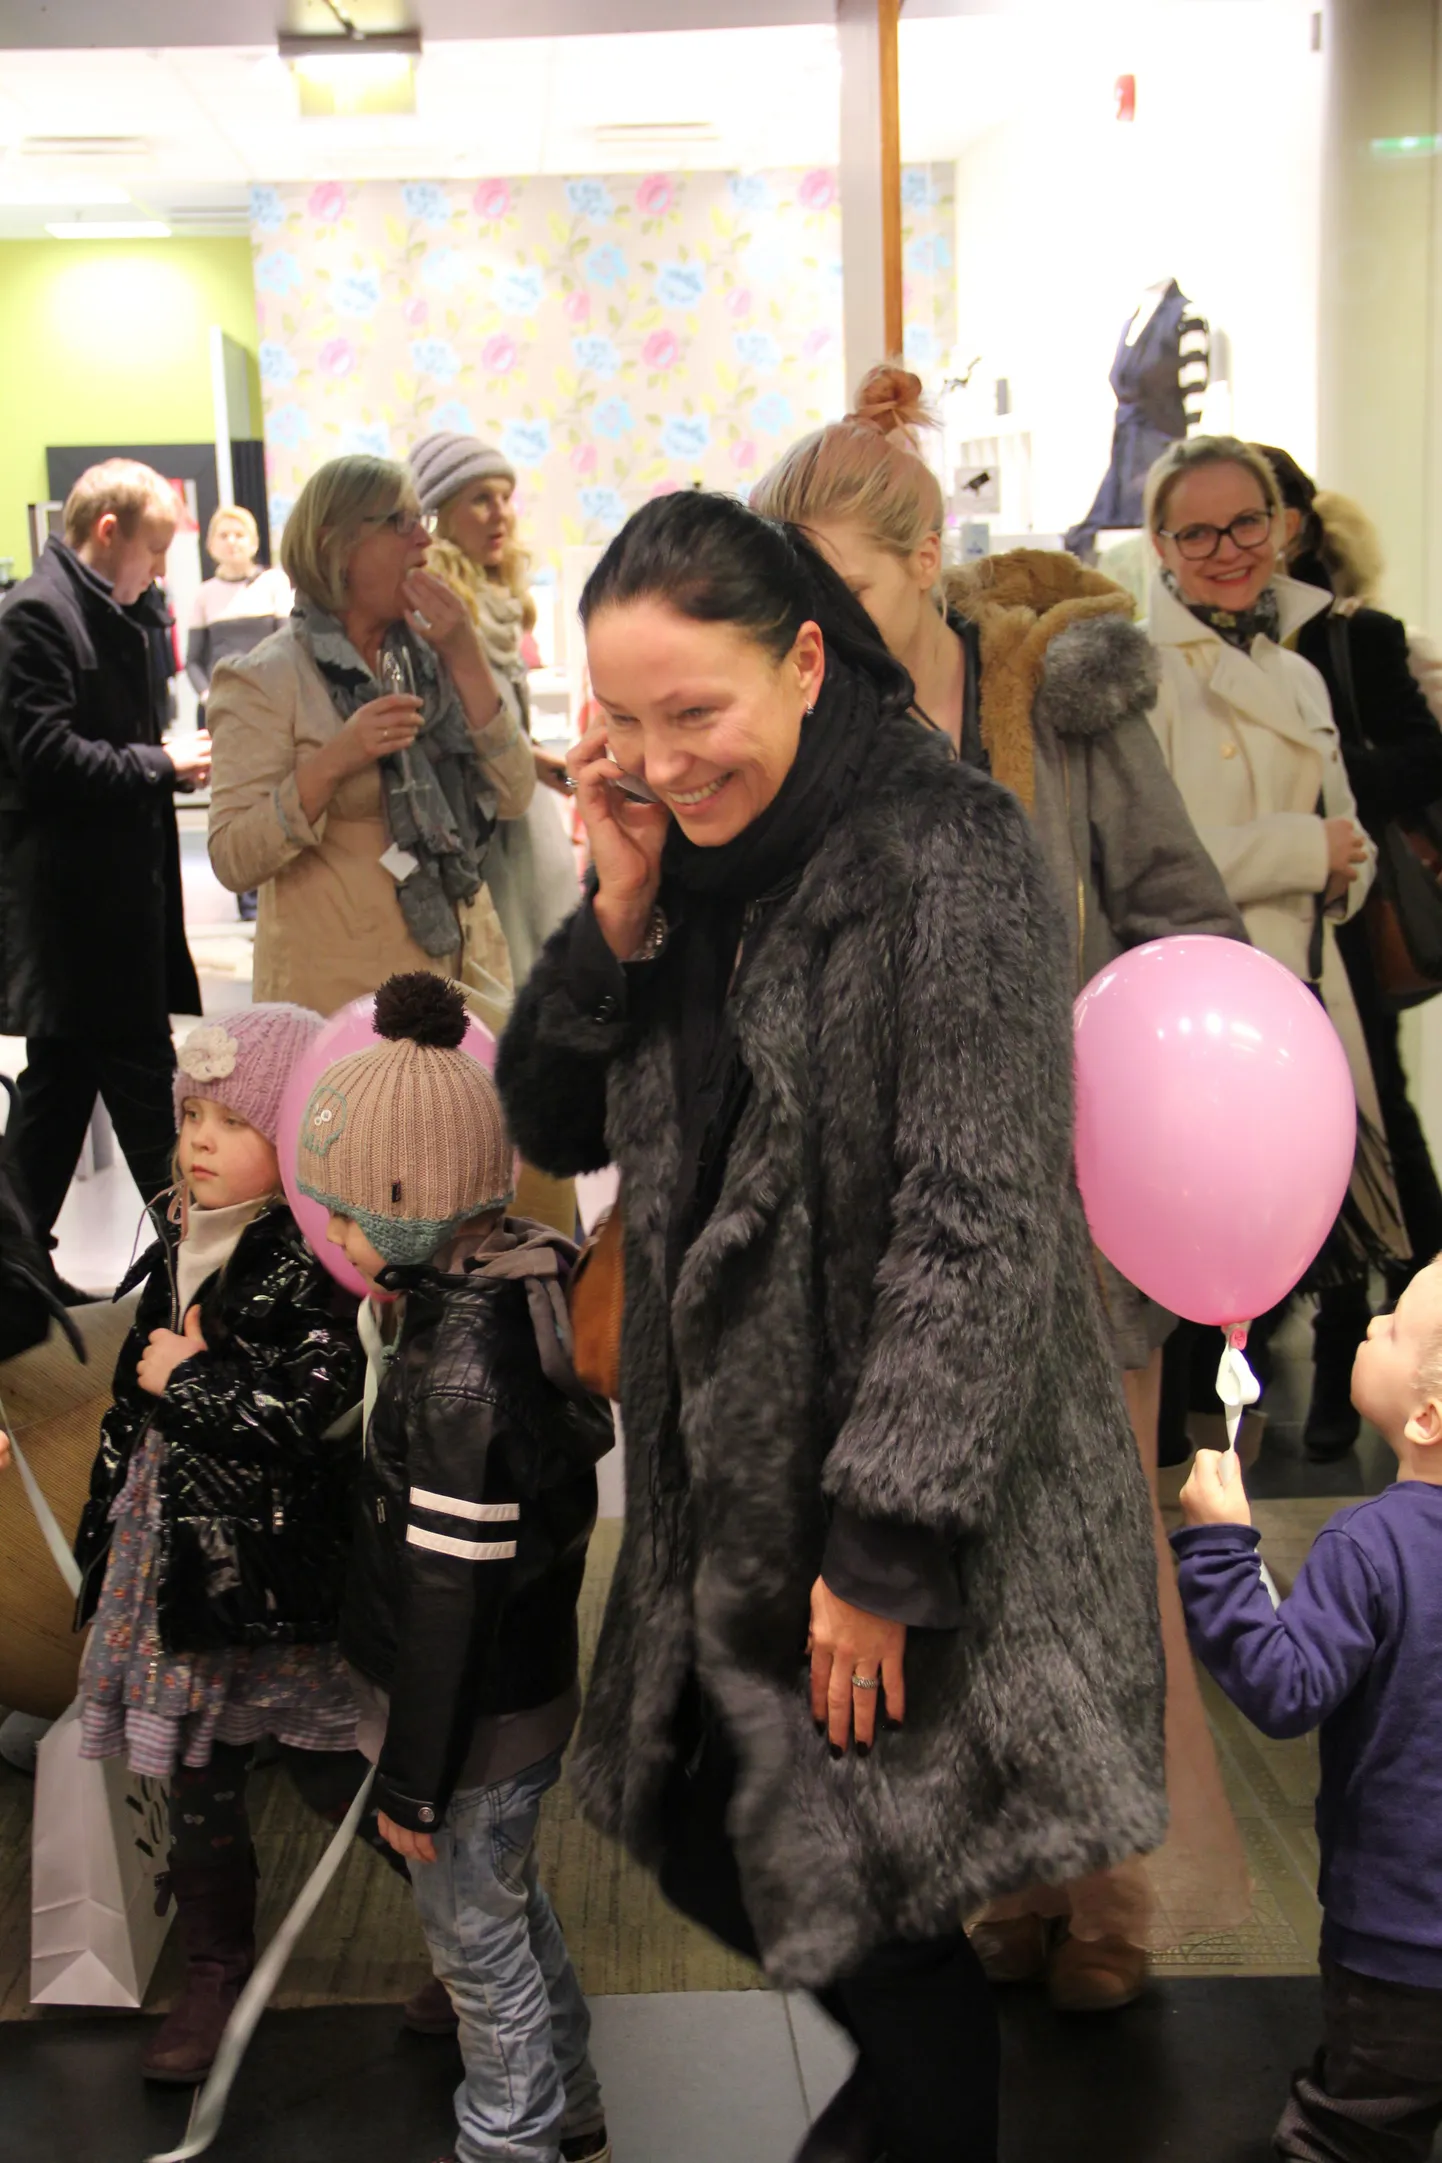 22. märtsil avati juba teine Taani kultusliku moebrändi kauplus Noa Noa Foorumi keskuses.
Kohal oli ka modellisaate kohtunik Margit Jõgger